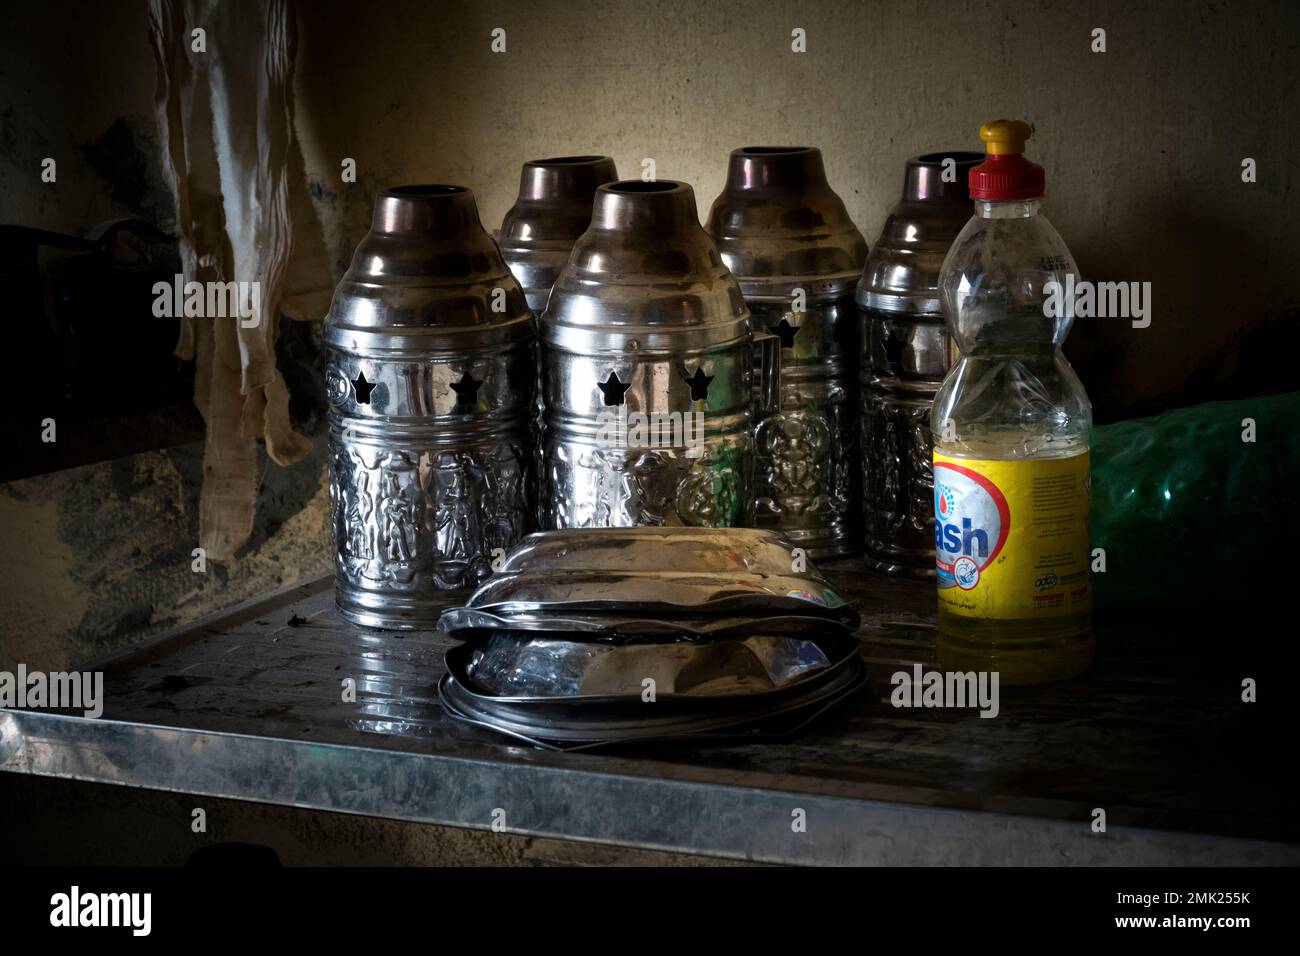 Moody images at a Shisha bar in Egypt Stock Photo